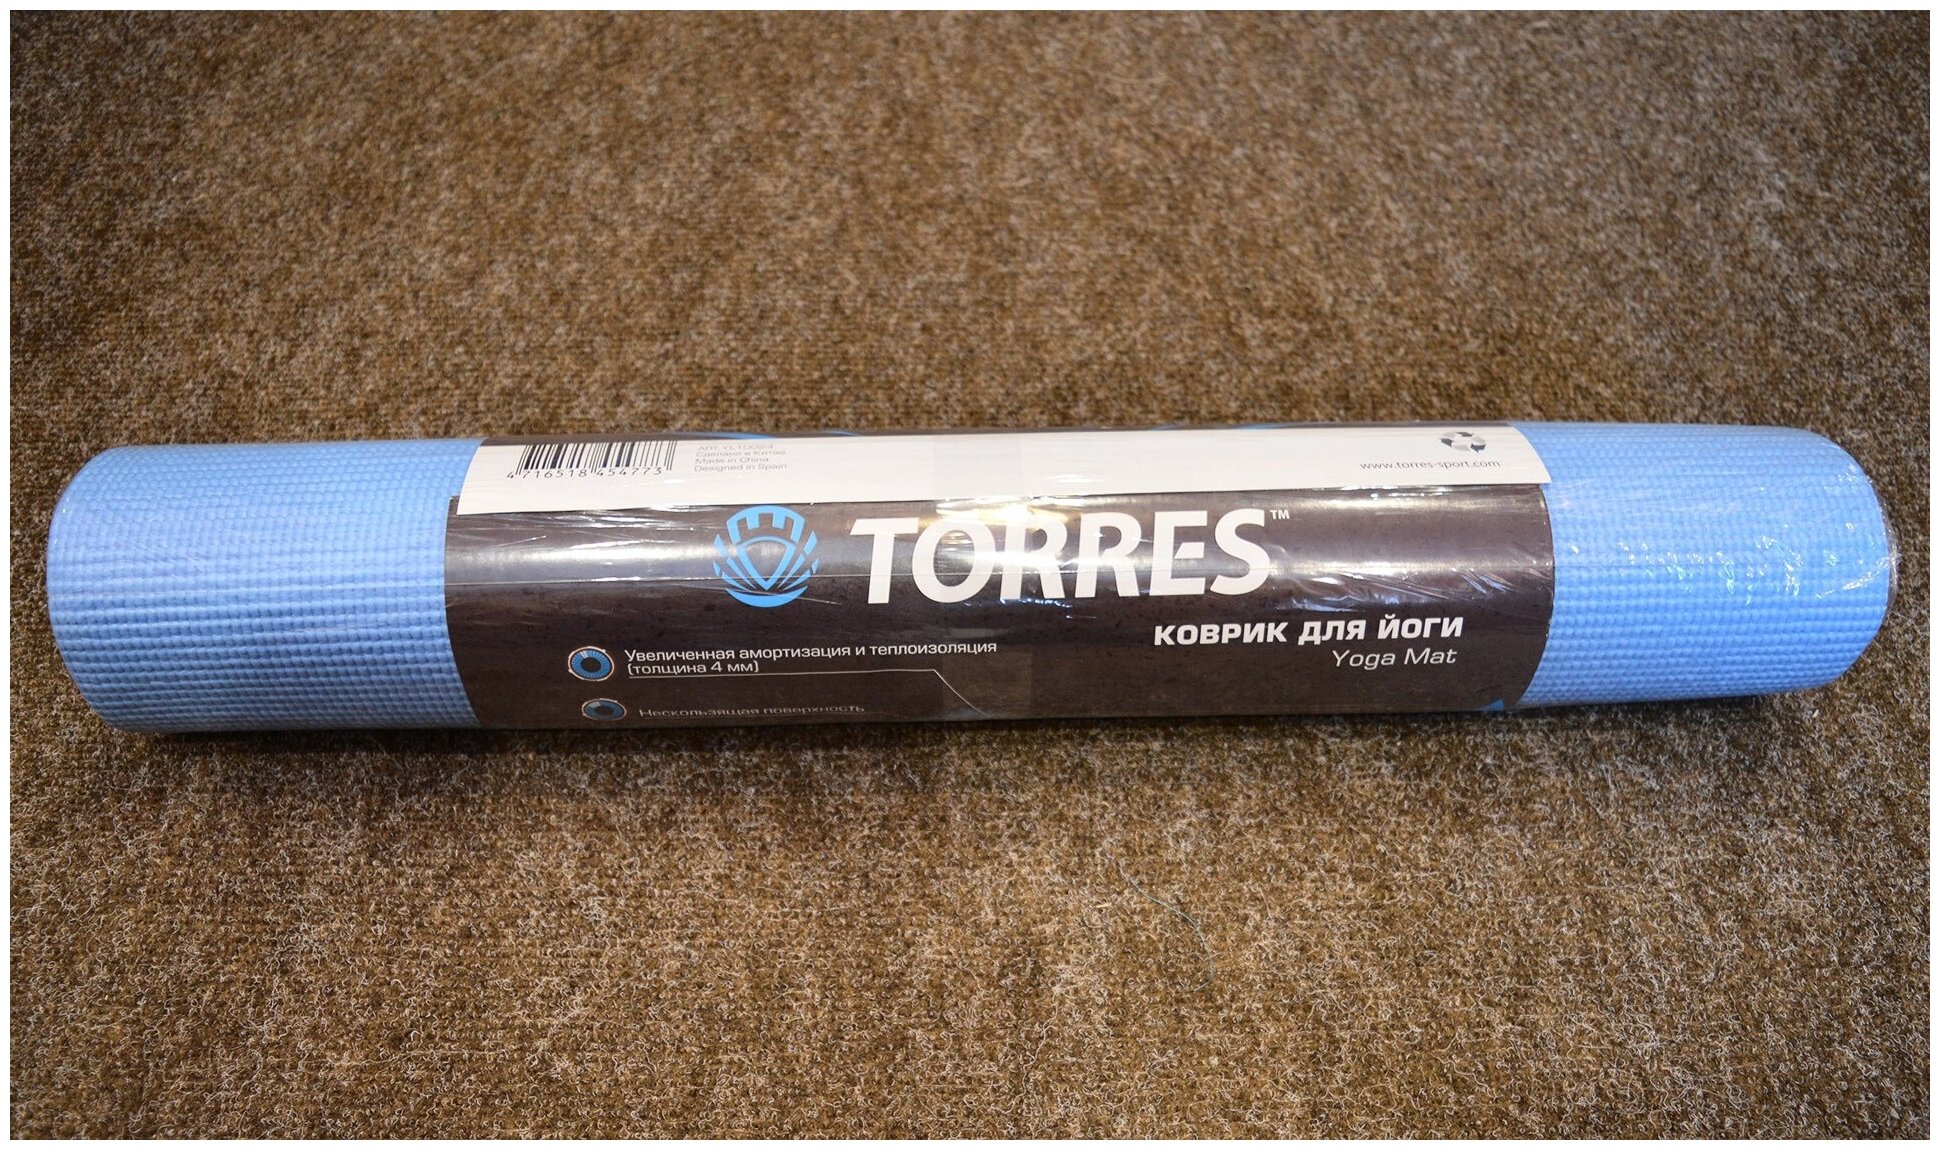 Коврик для йоги и фитнеса с теплоизоляционными свойствами TORRES YL10024-1 толщиной 4 мм из ПВХ / голубой, 172х60 см